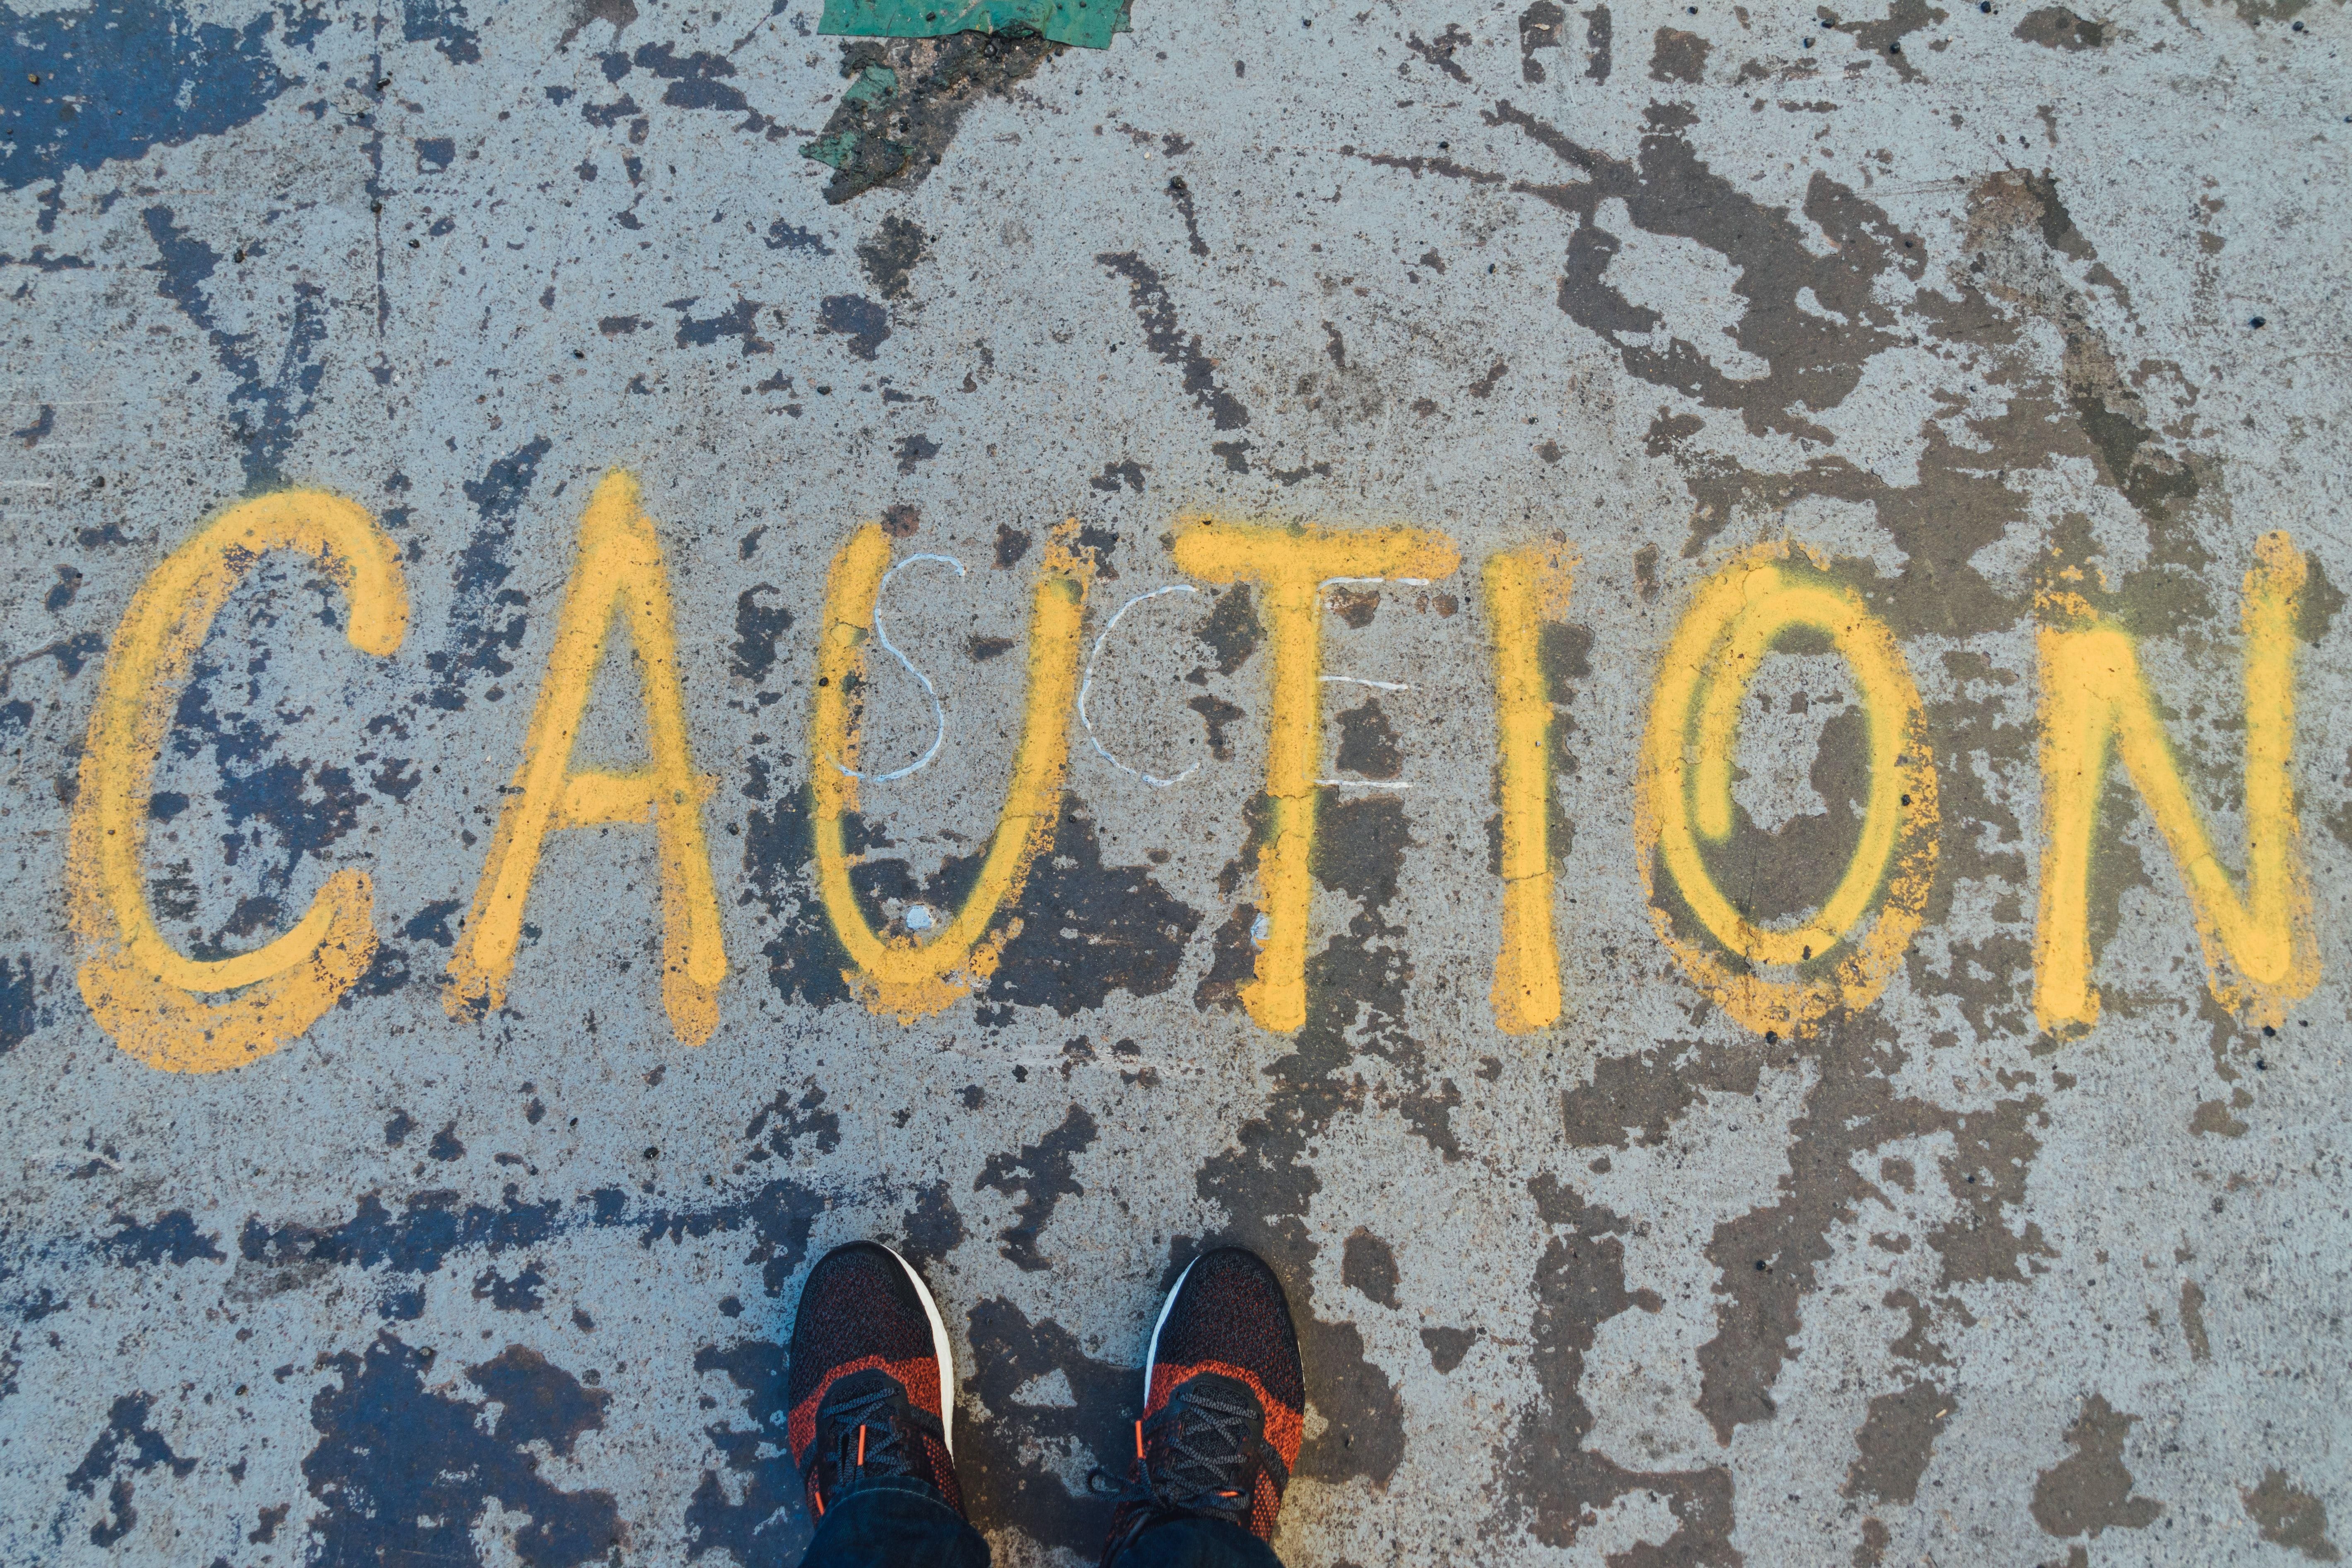 Járdára festett Caution felirat előtt álló ember lába